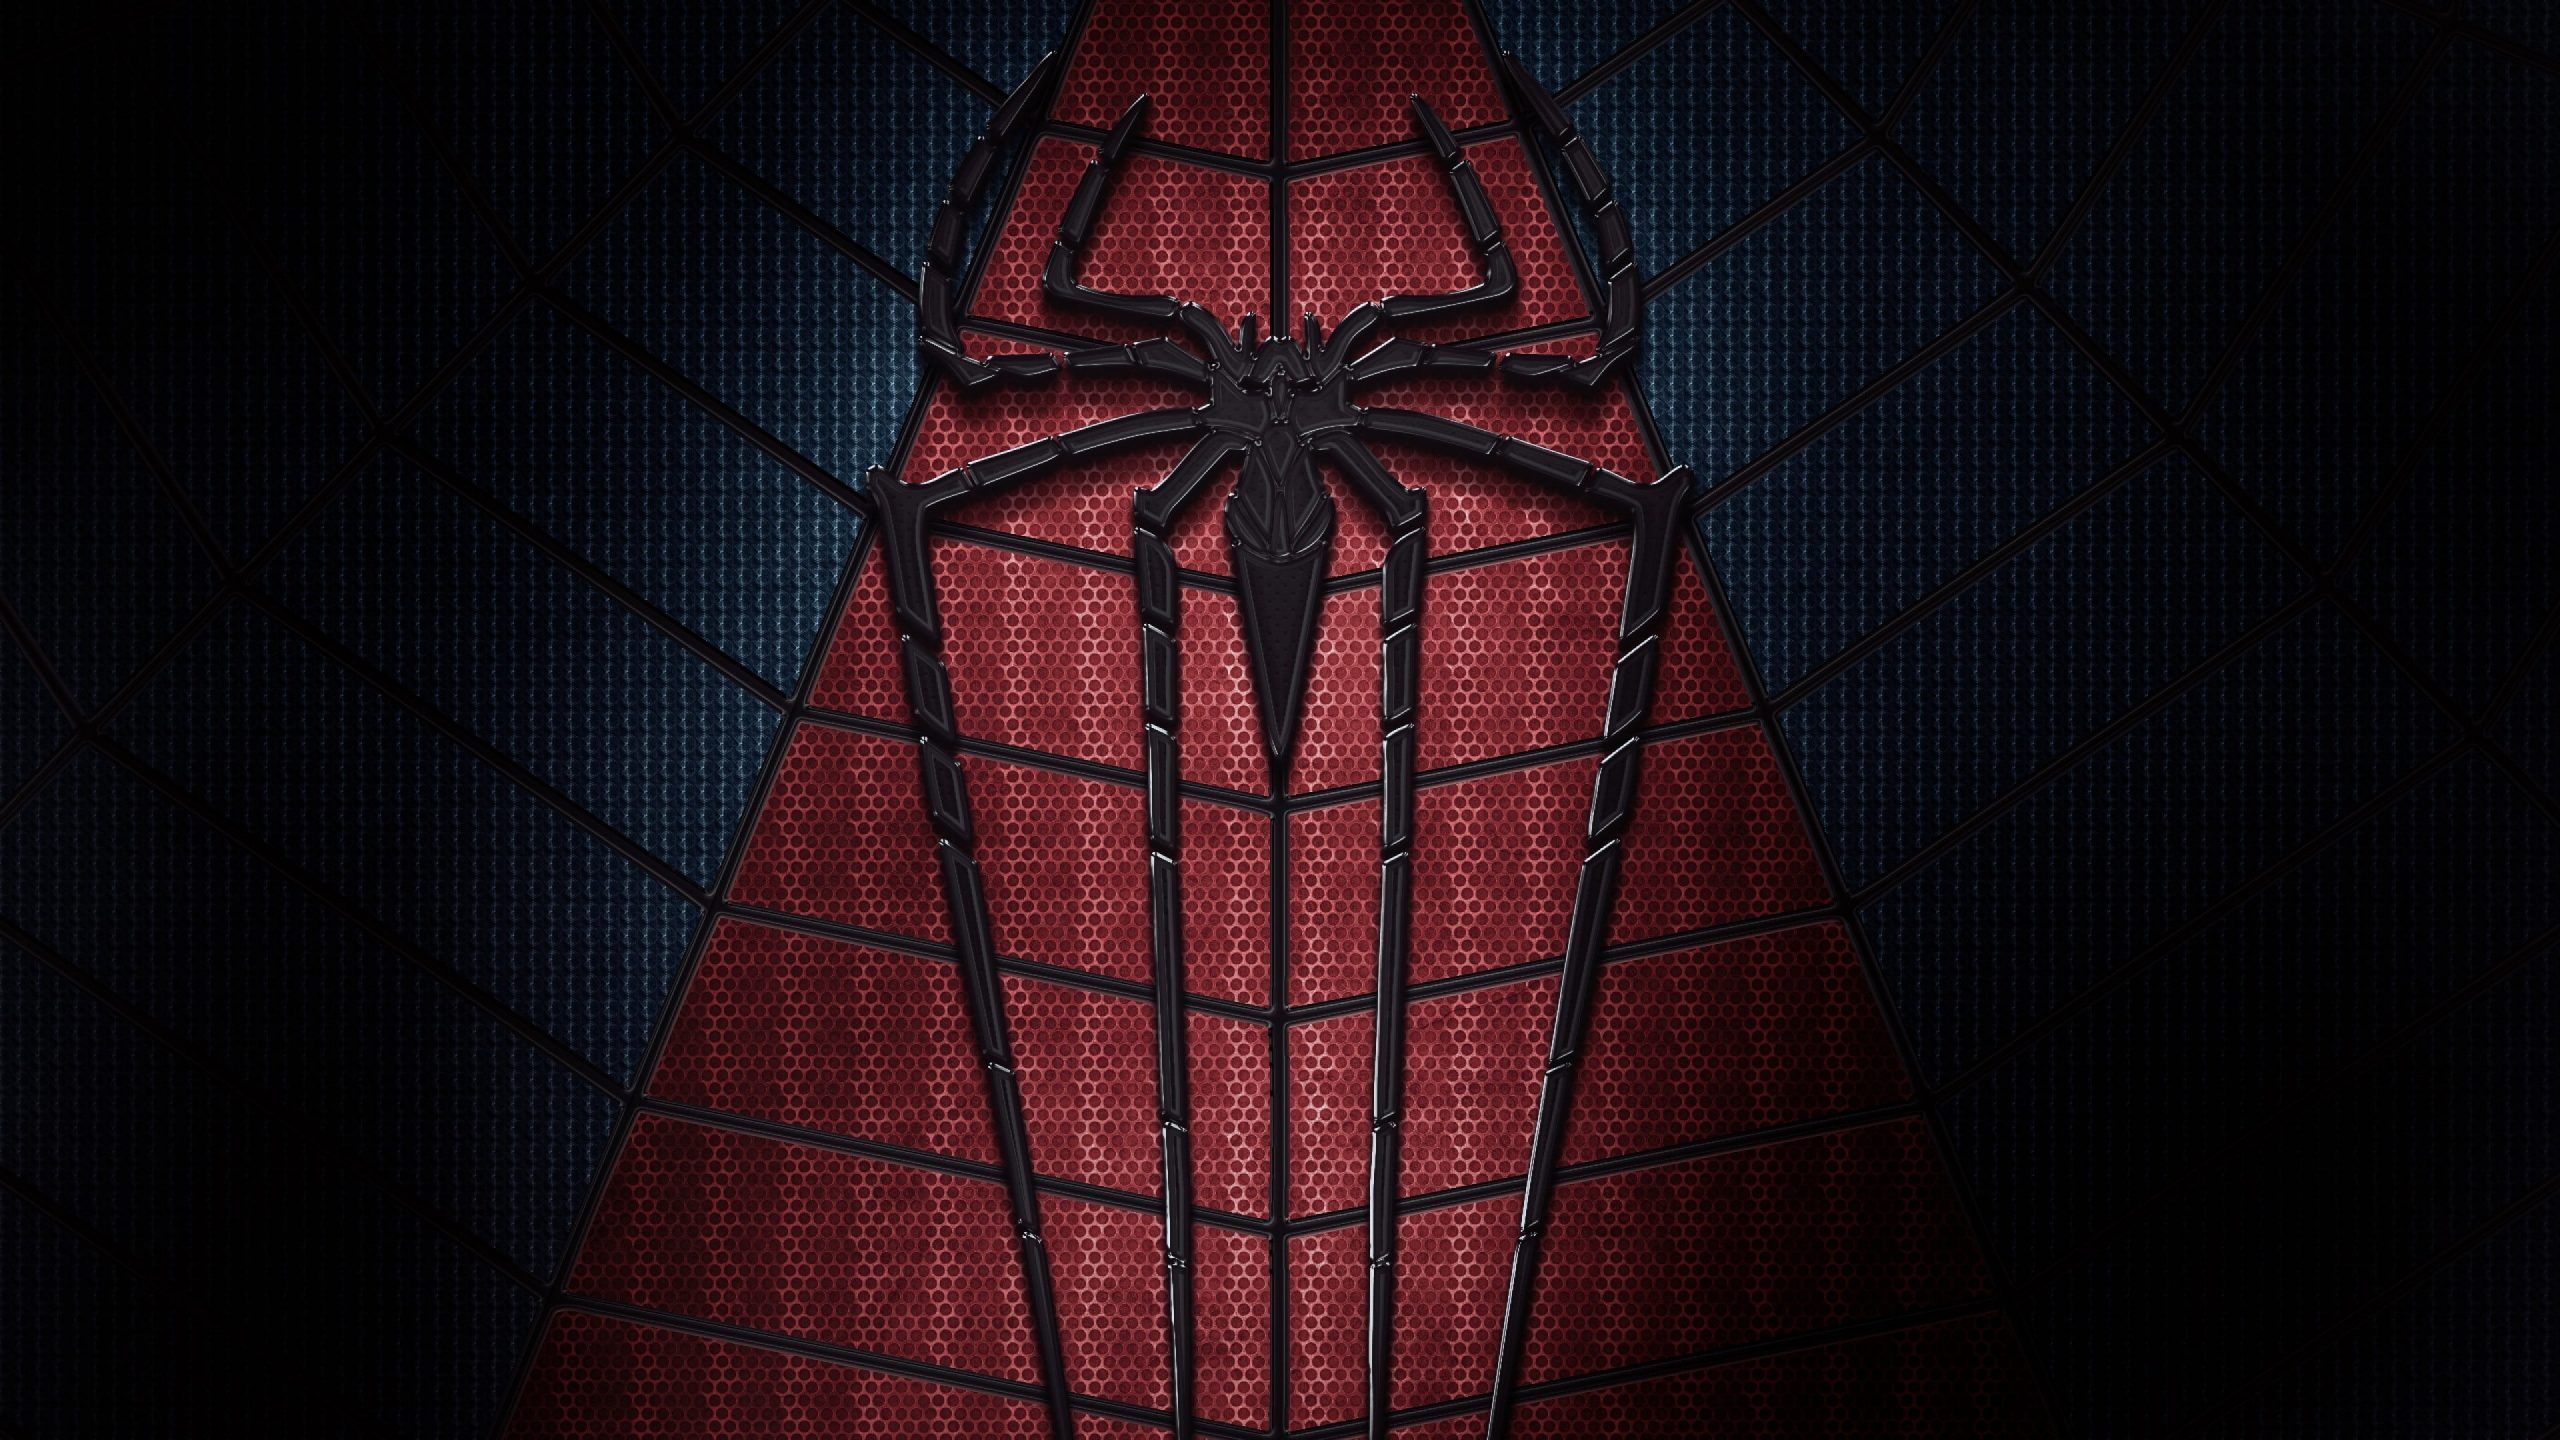 The amazing spider man wallpaper - Dark red